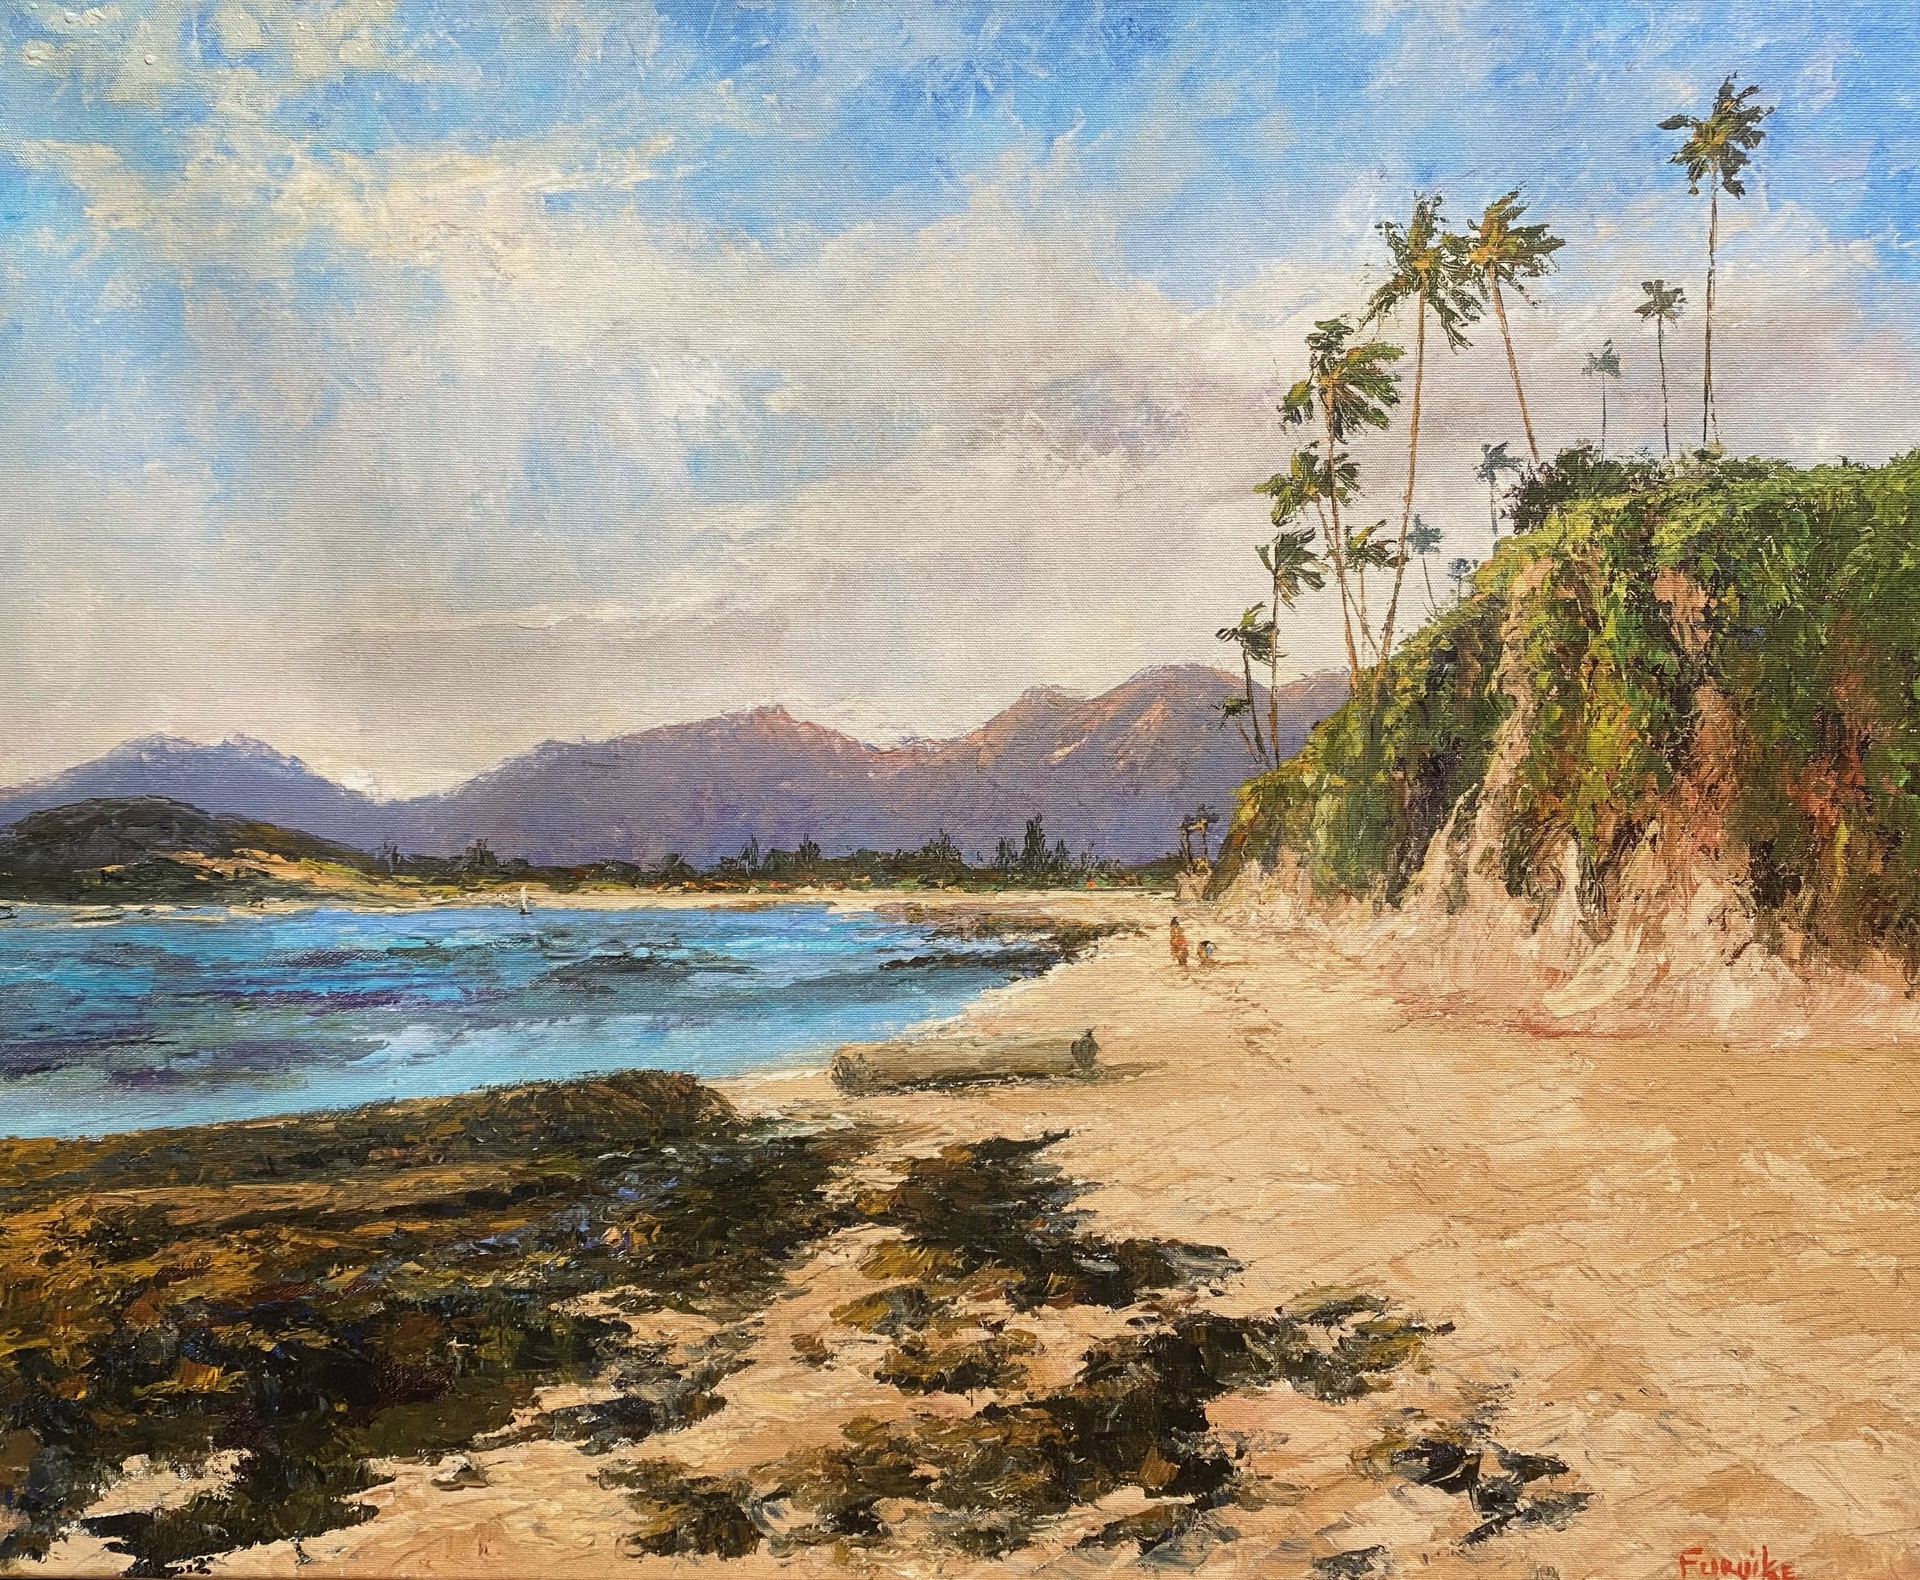 Maili to Waiʻanae by Ed Furuike